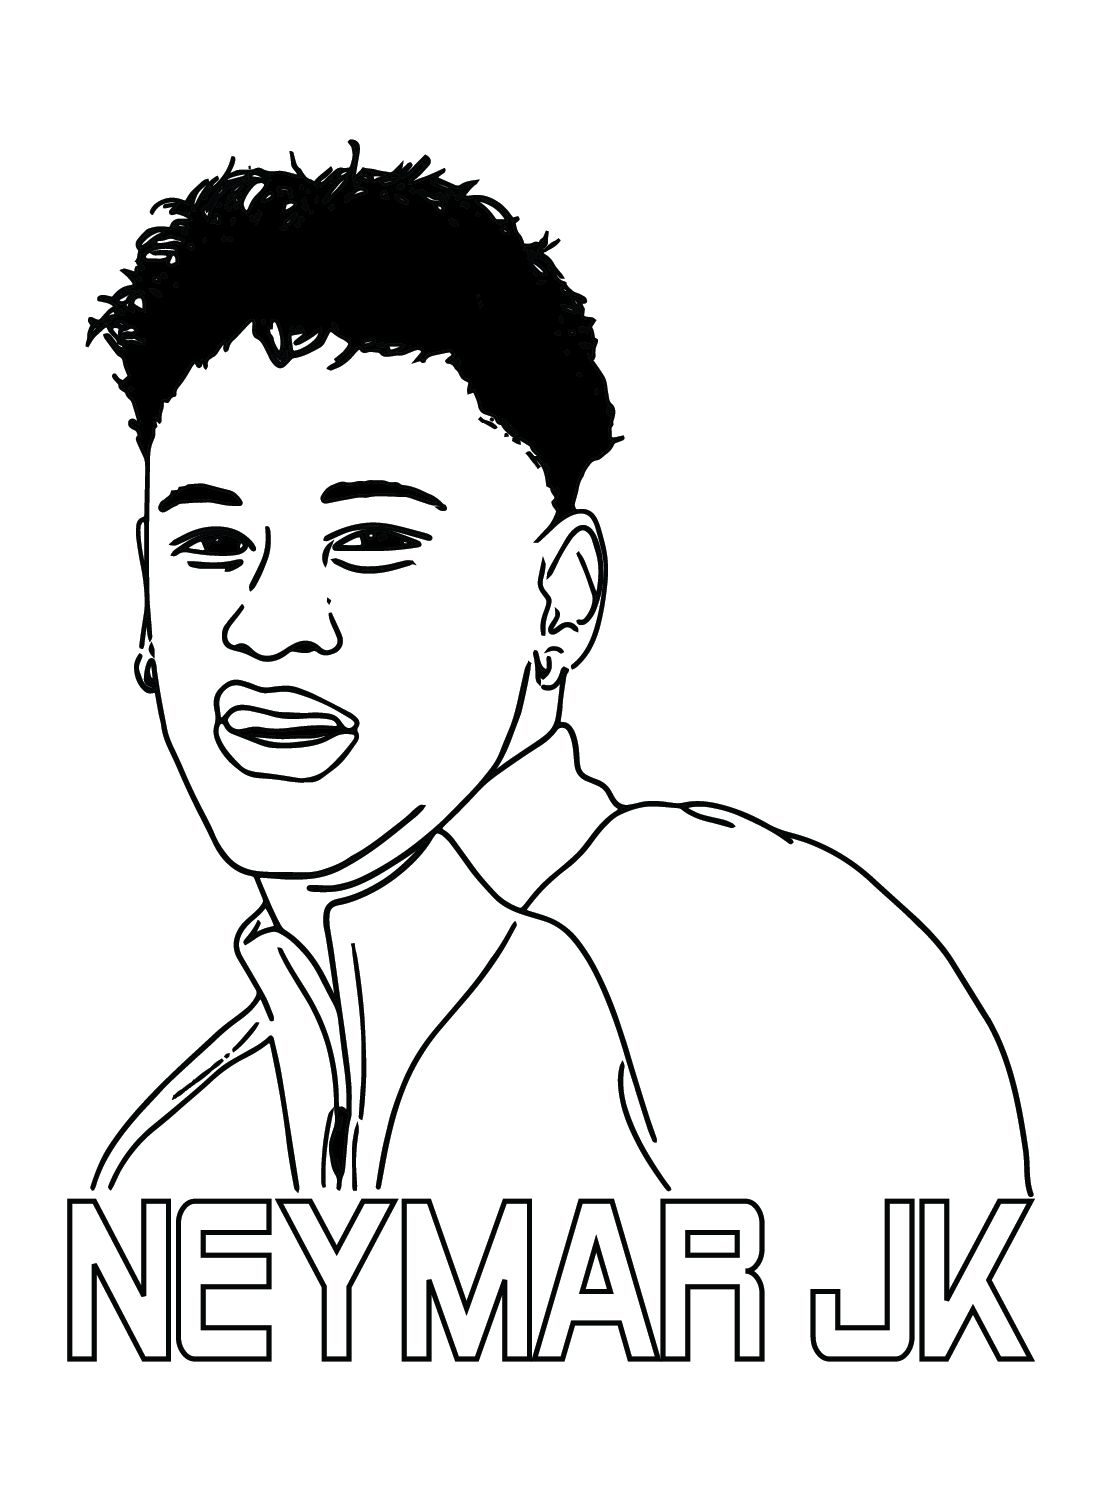 Neymar soll von Neymar drucken